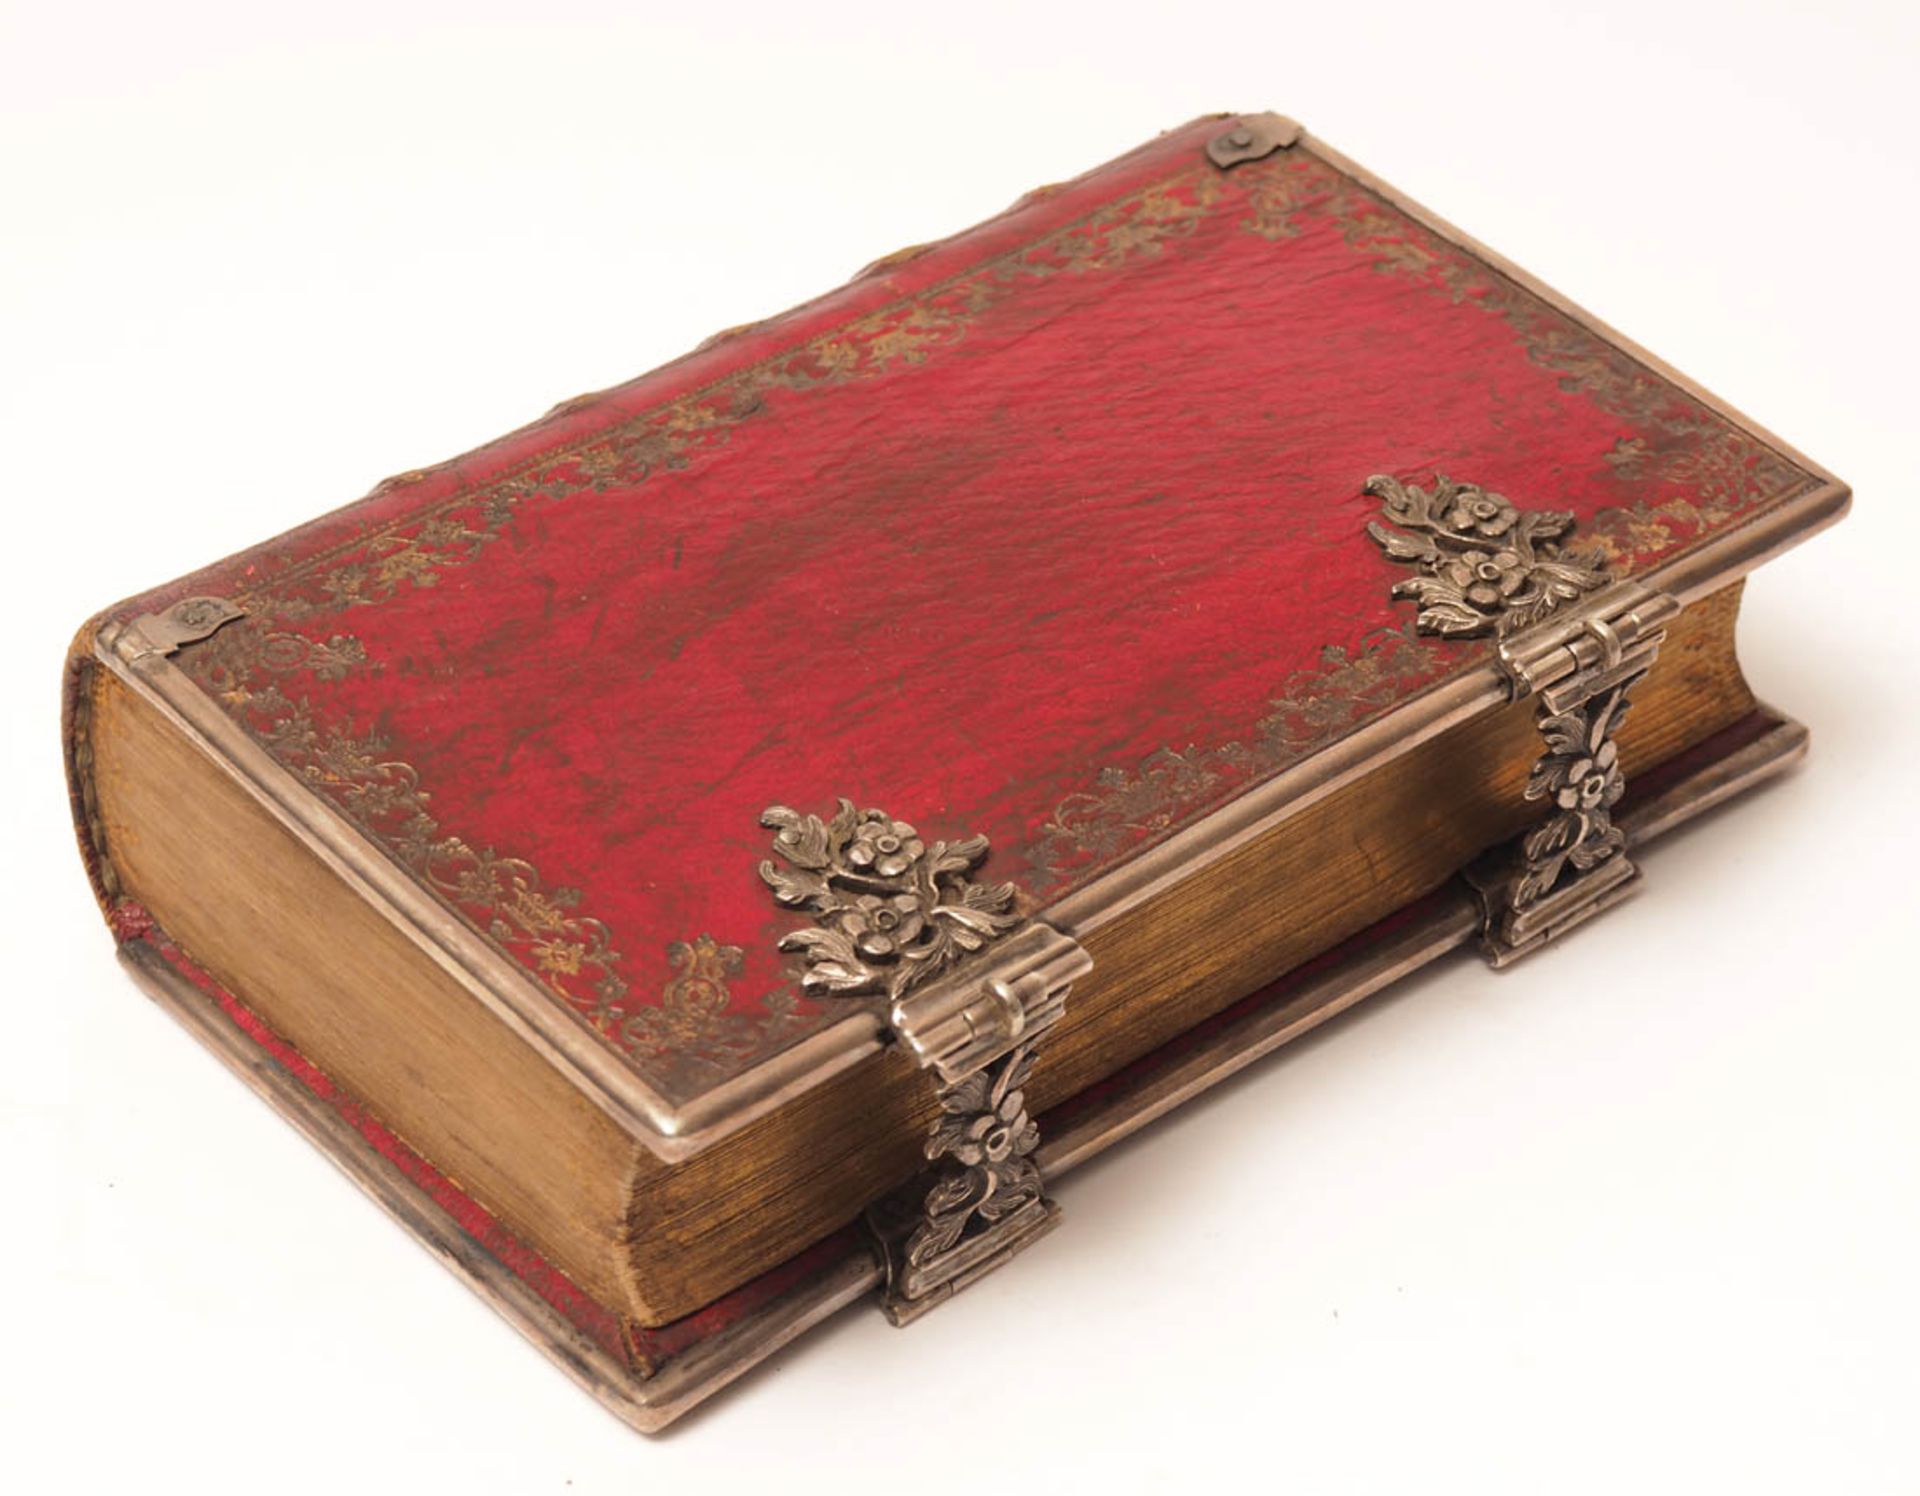 Gebetbuch, um 1760 Roter Ledereinband mit goldgeprägtem Rücken. Floral reliefierte, durchbrochen